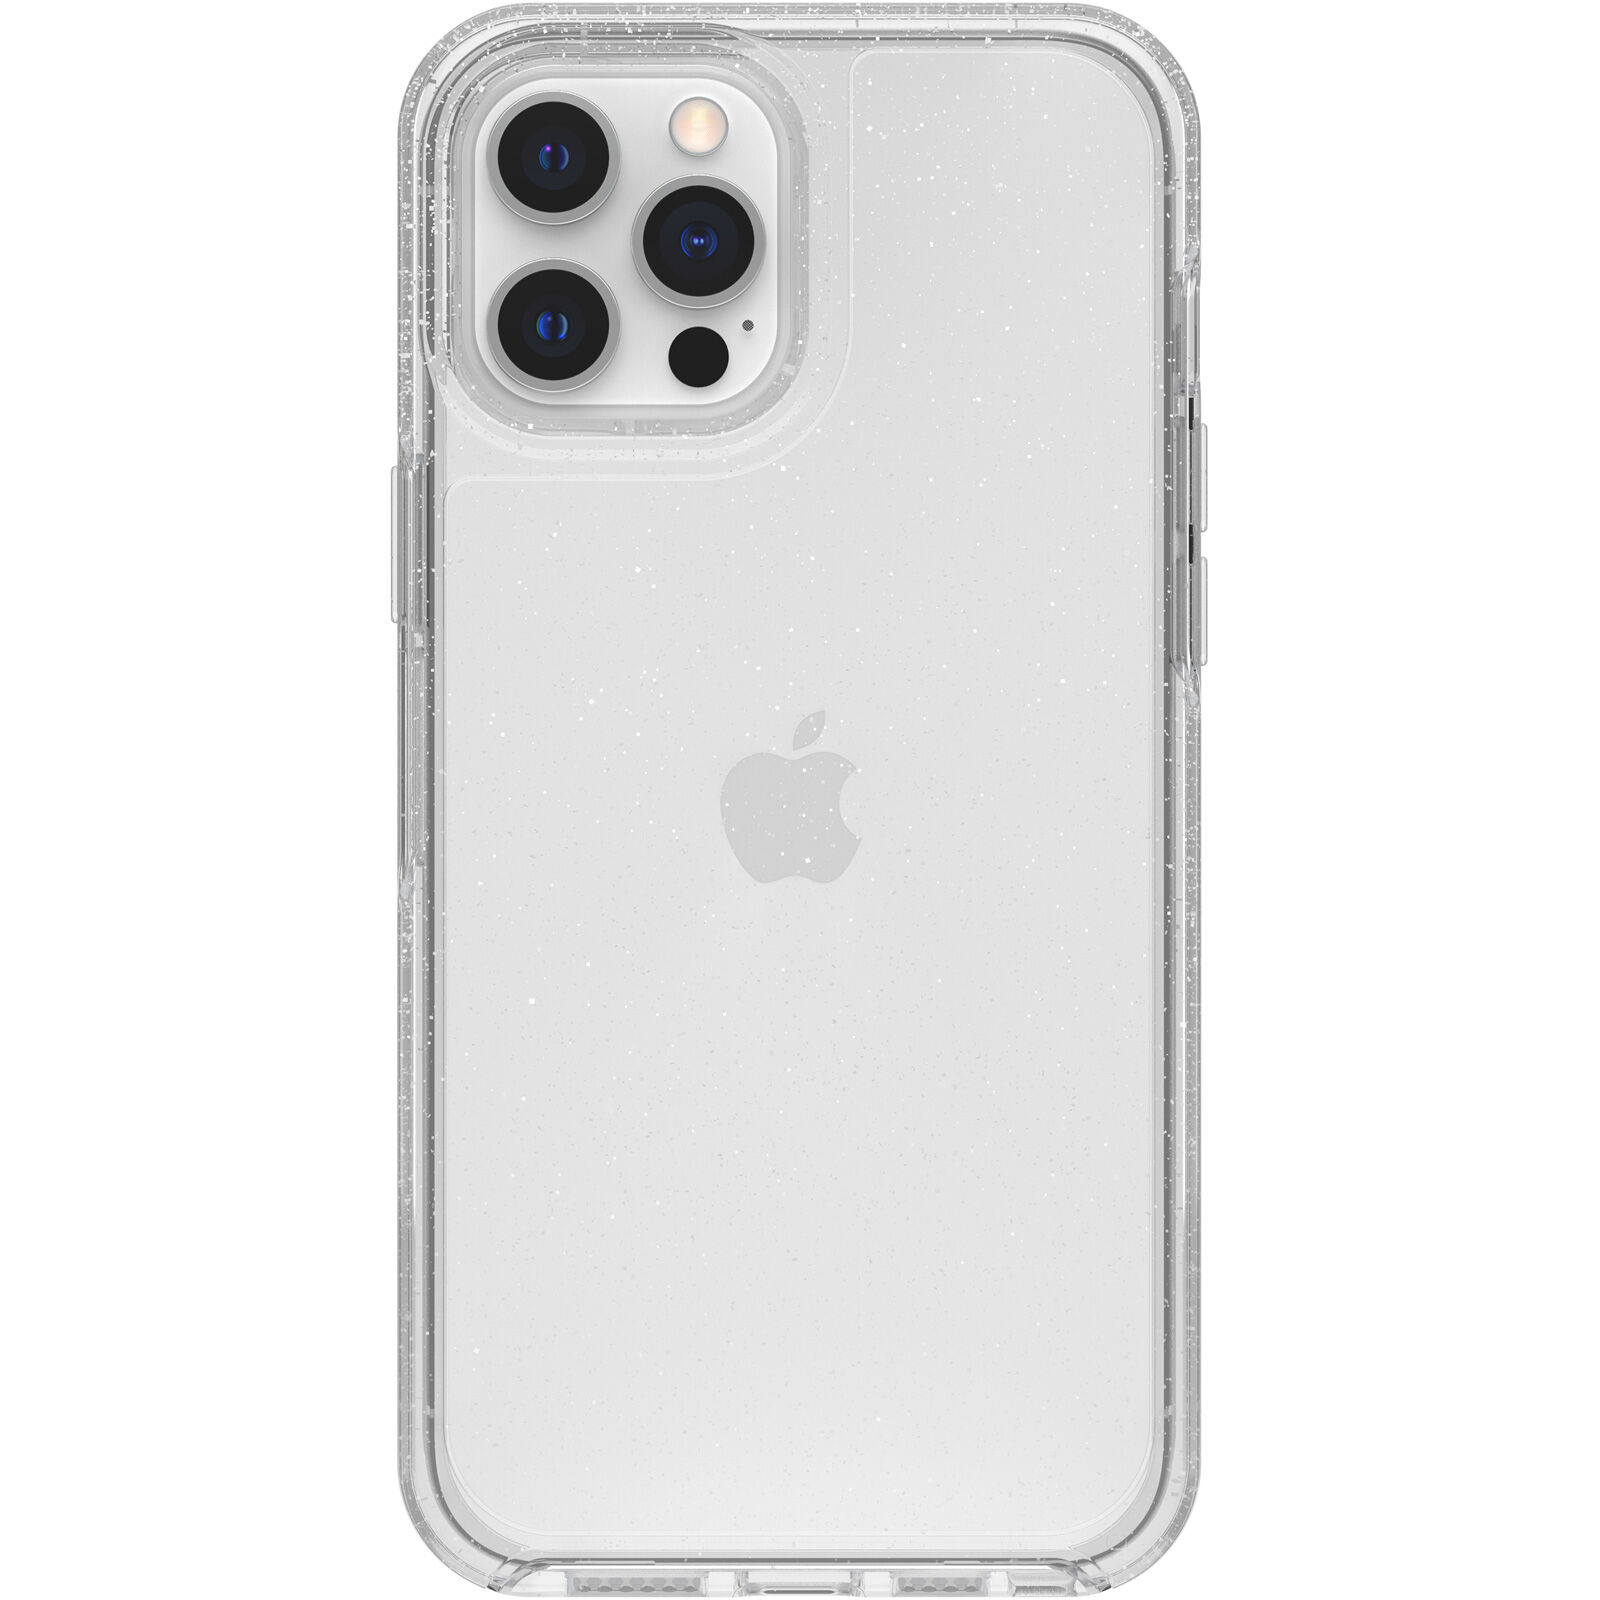 iPhone 12 Pro Max ケース | クリアケース | OtterBox Symmetry シリーズ クリアケース